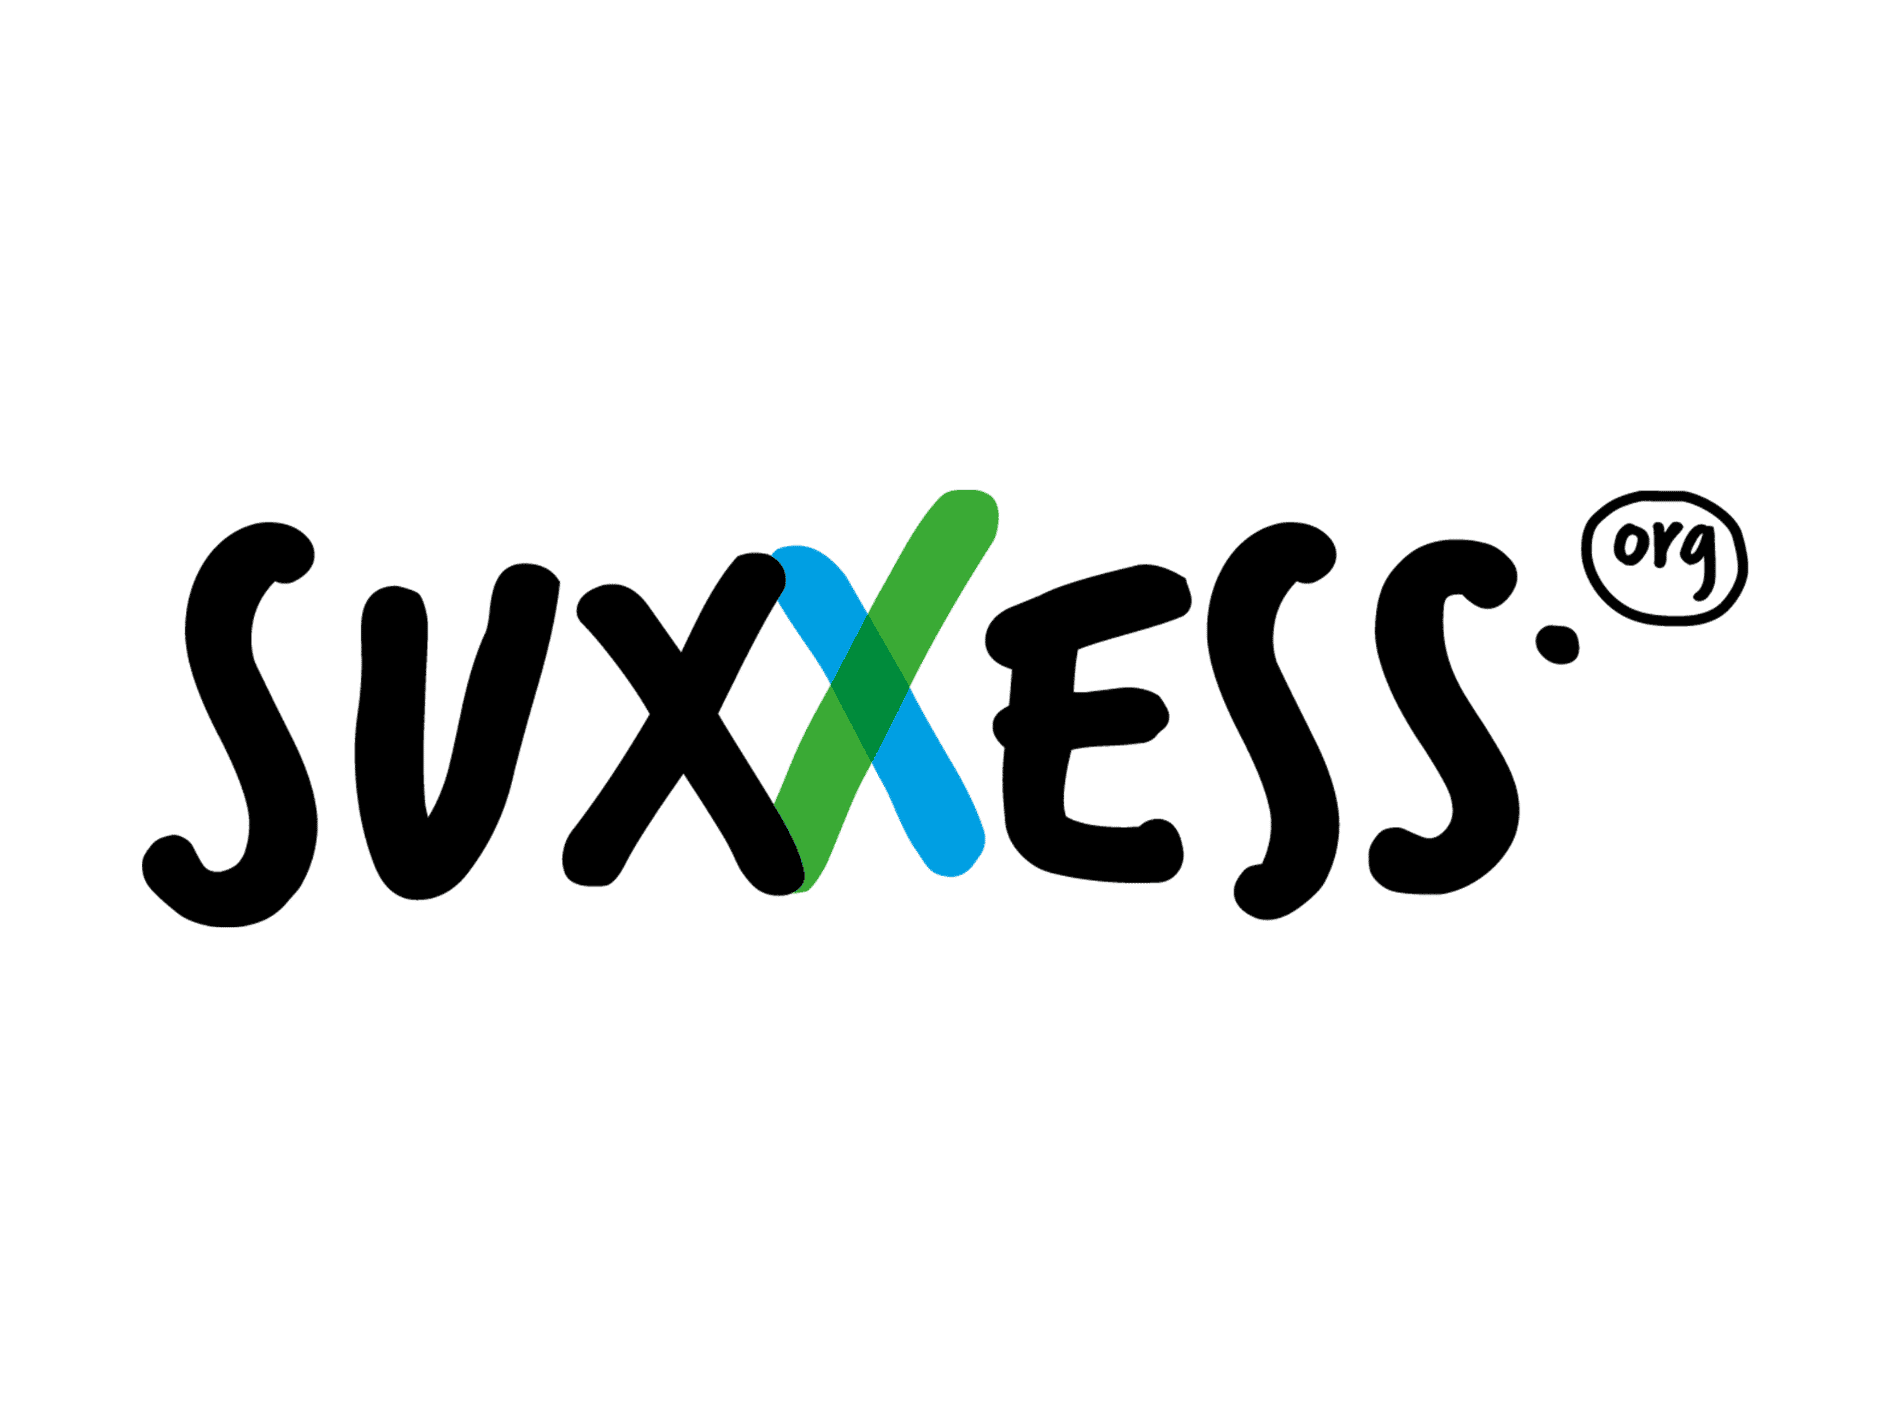 Marketing Schulung Partner Suxxess